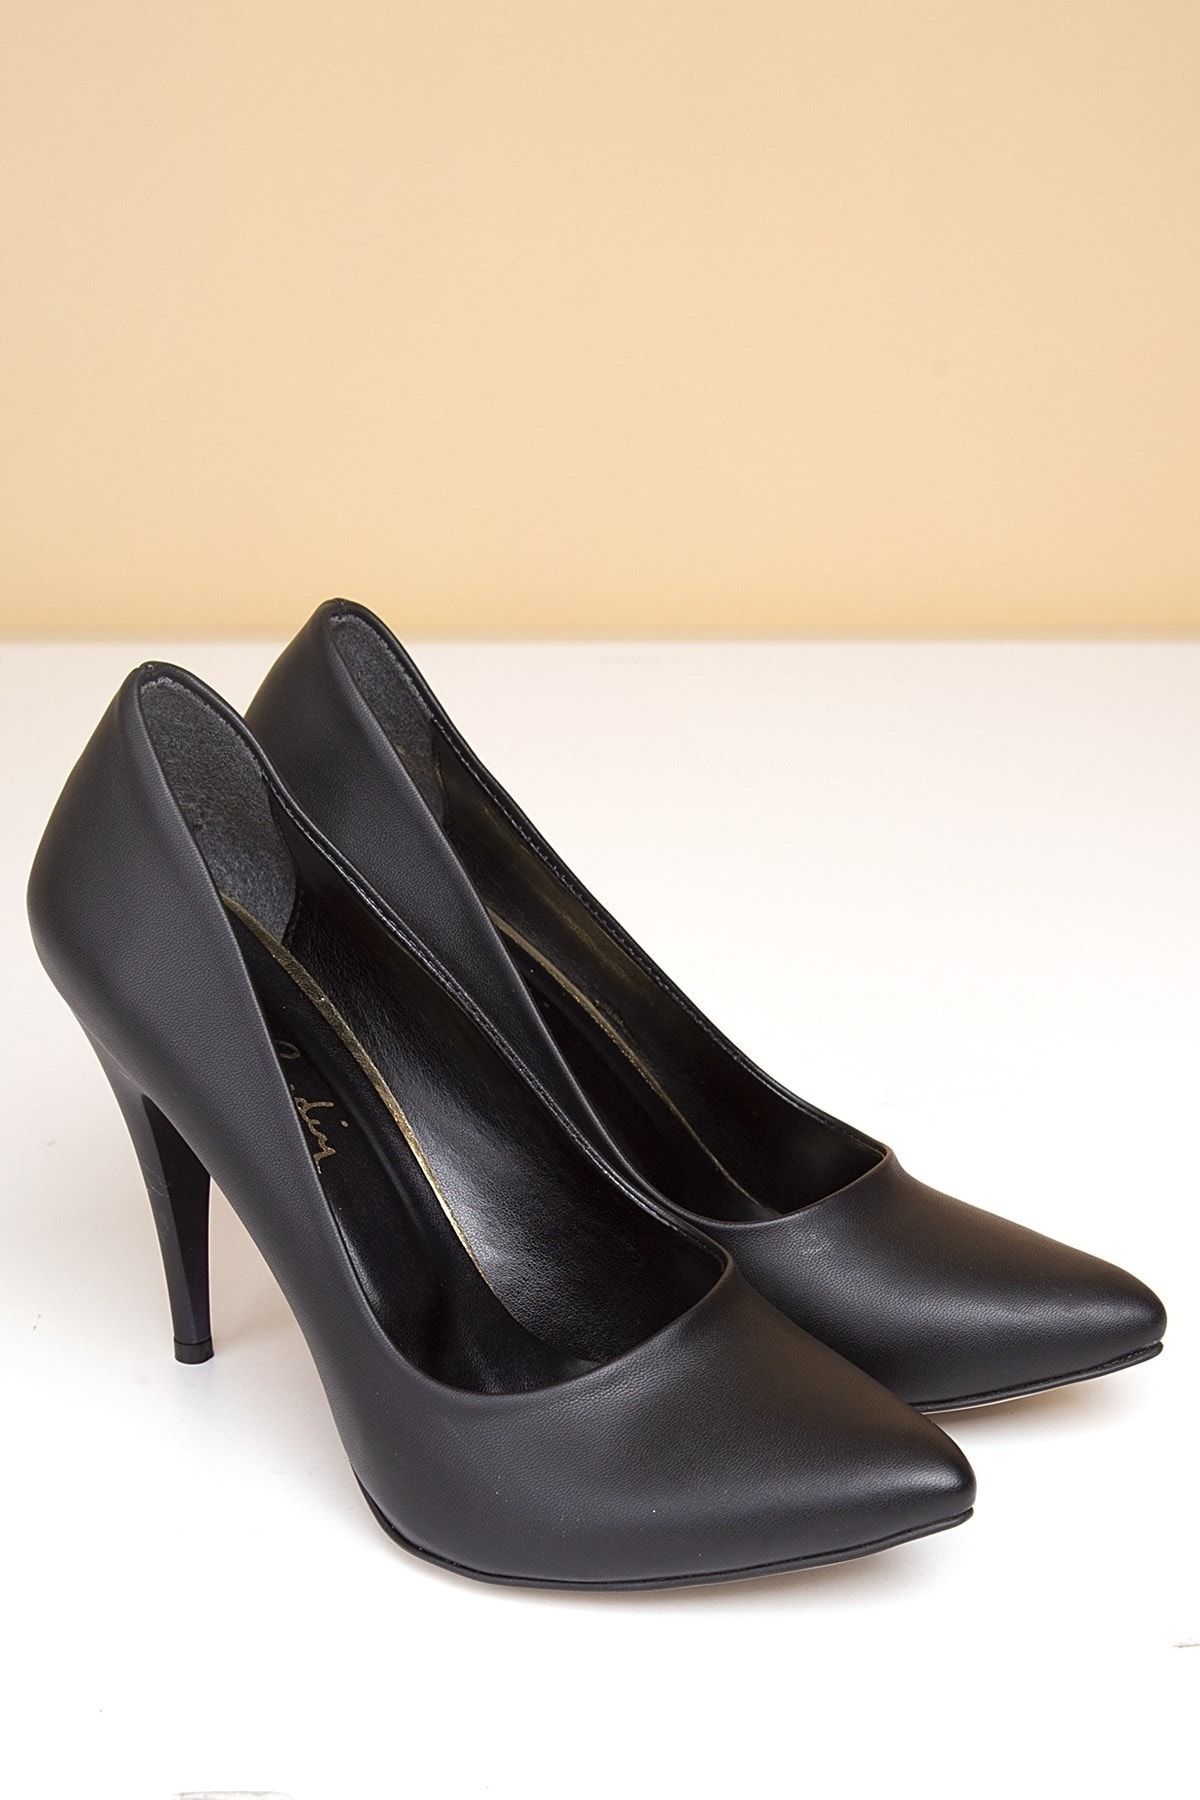 Pierre Cardin Kadın Topuklu Ayakkabı, Siyah (Pc-50180)